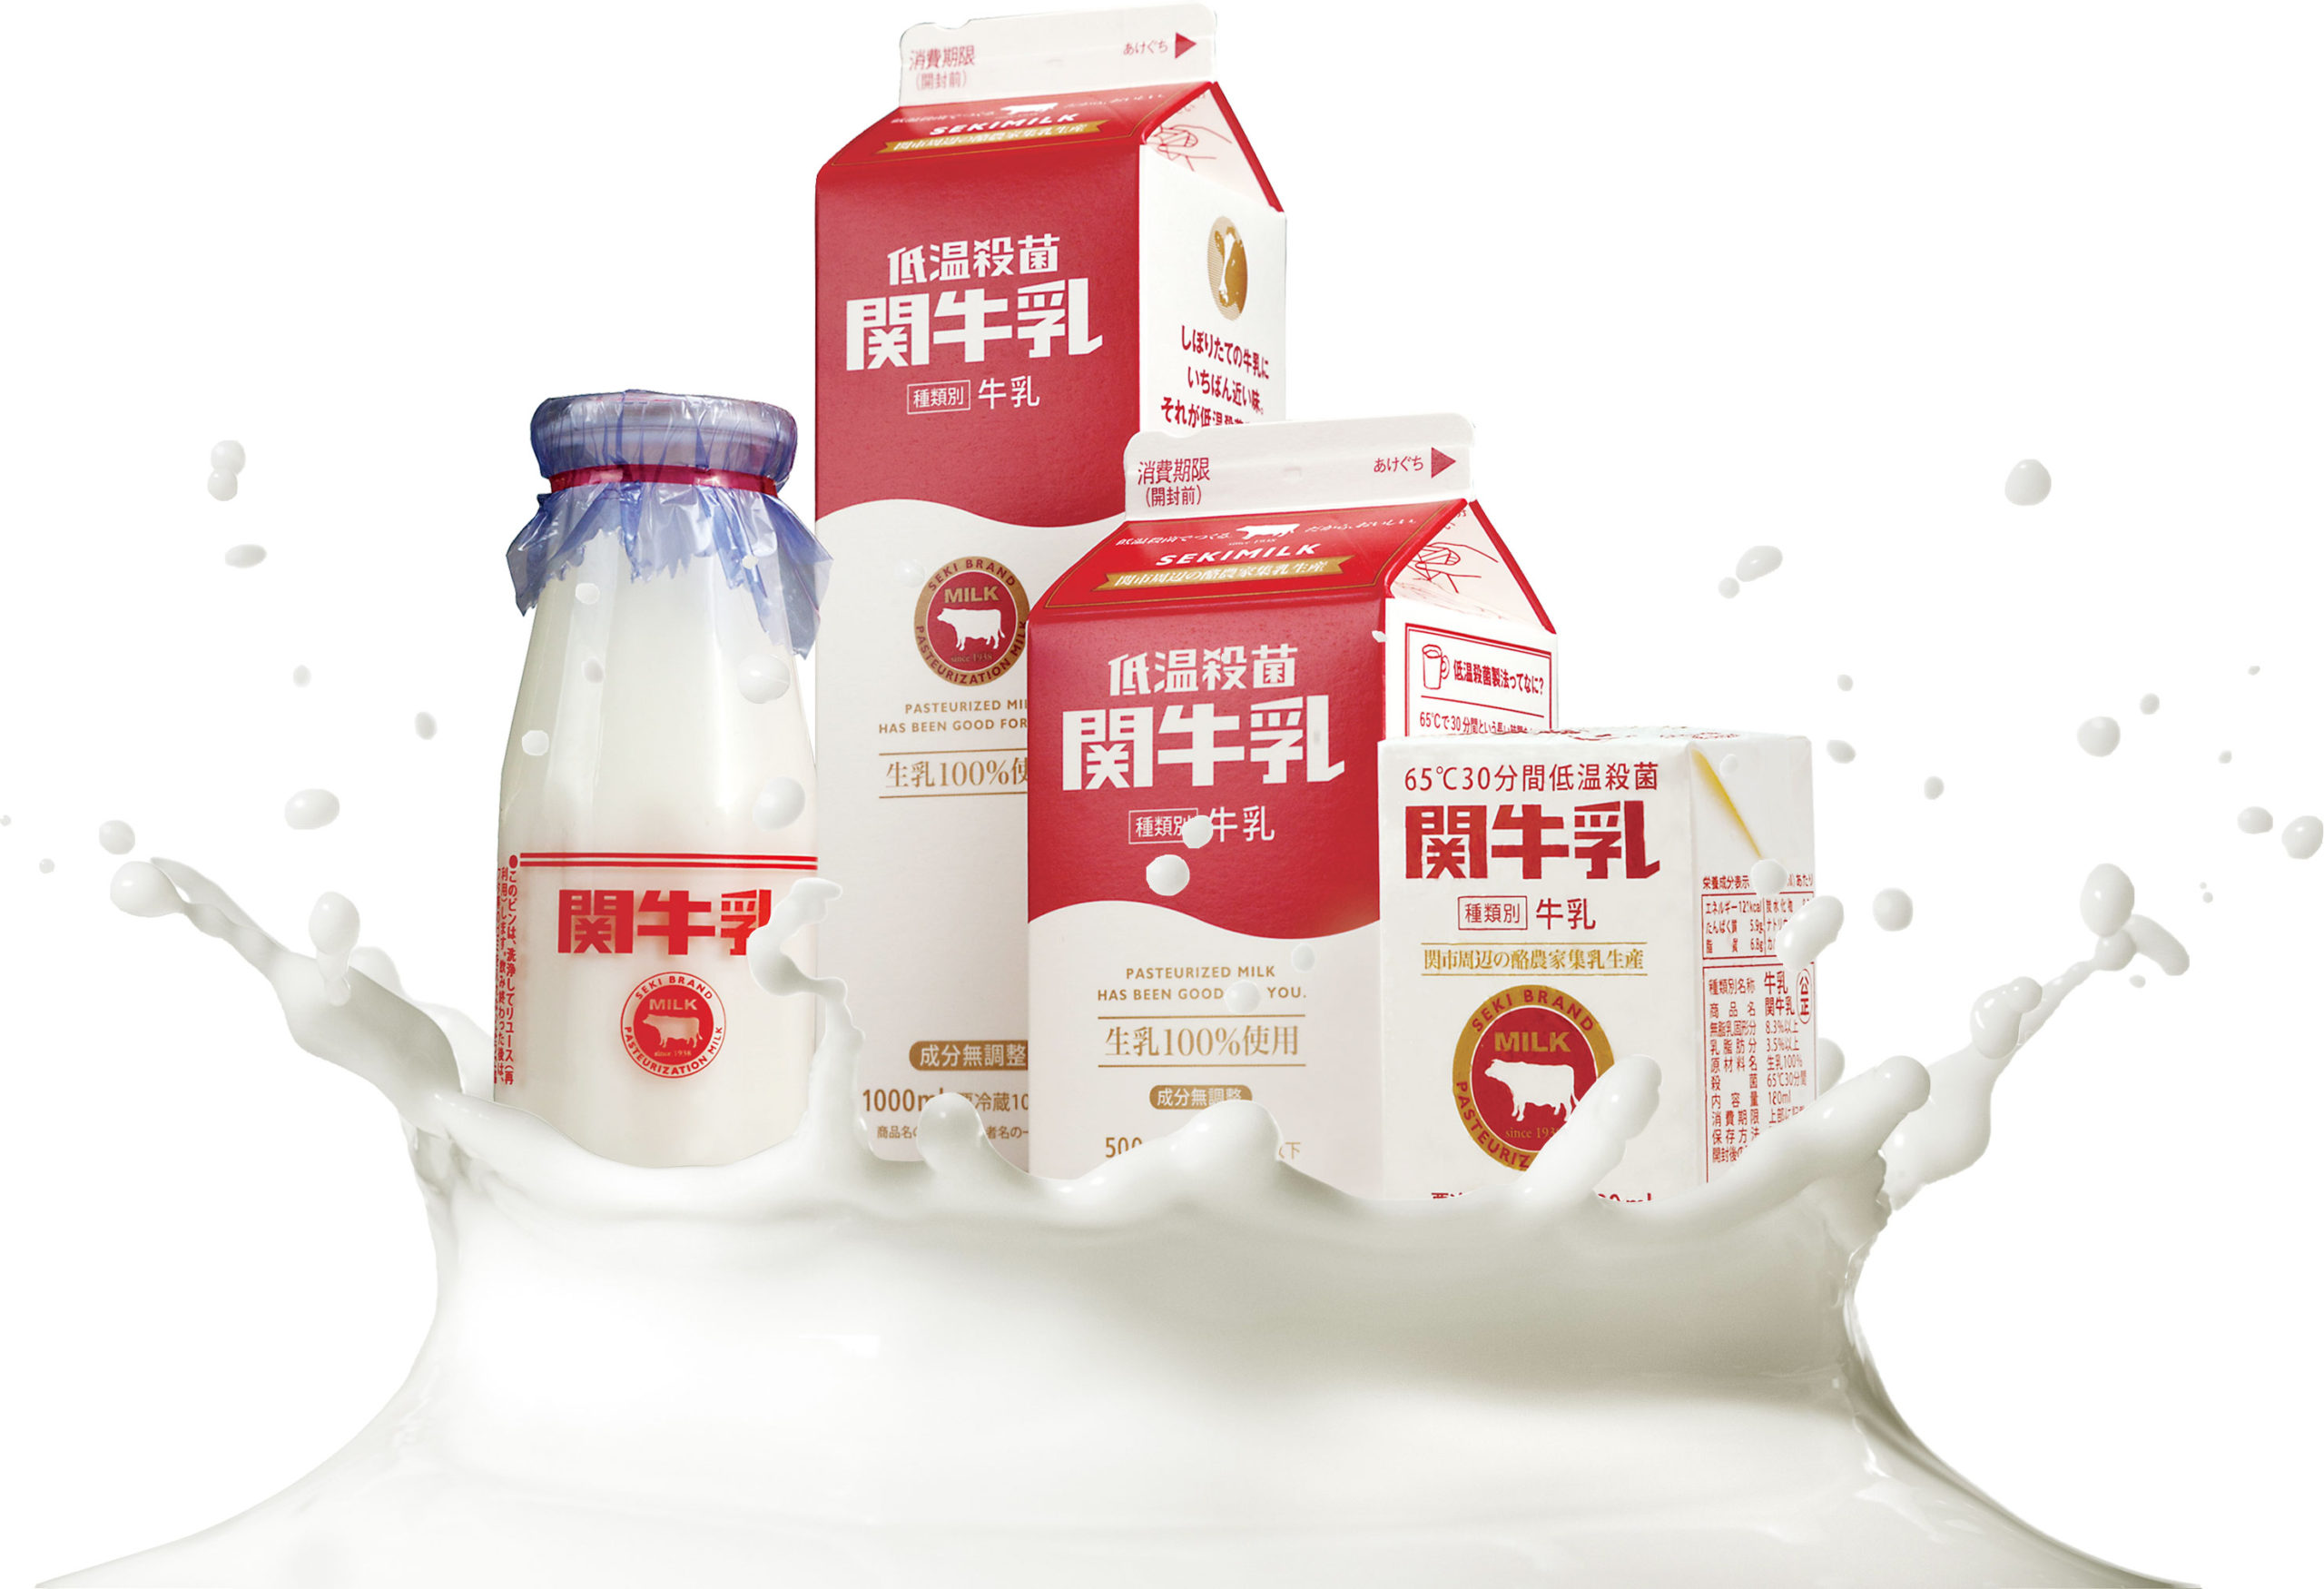 関牛乳株式会社 岐阜県関市 あんしん おいしい 低温殺菌 ほんものの牛乳を地元の人々にお届けしています